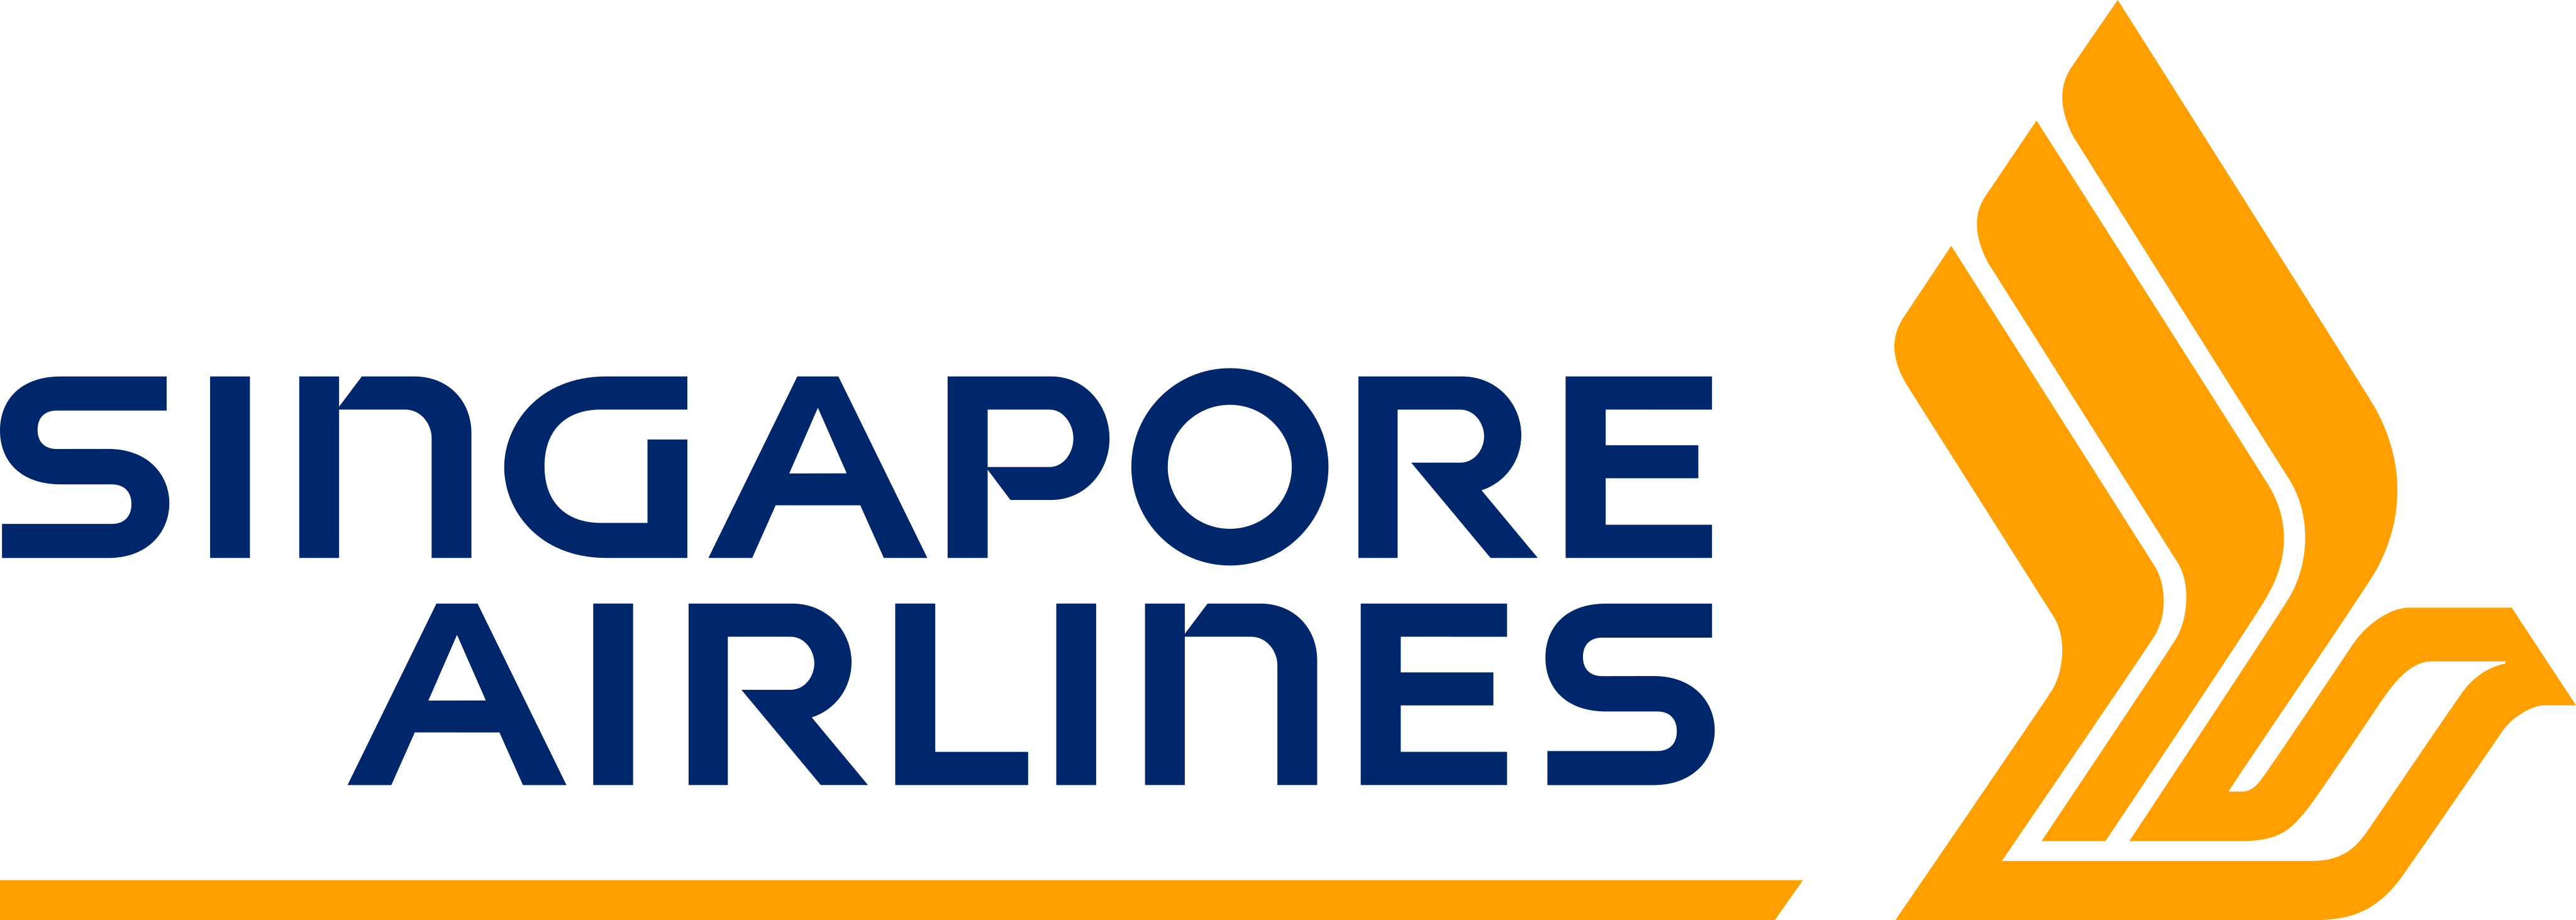 singapore airlines logo - Singapore Airlines Logo